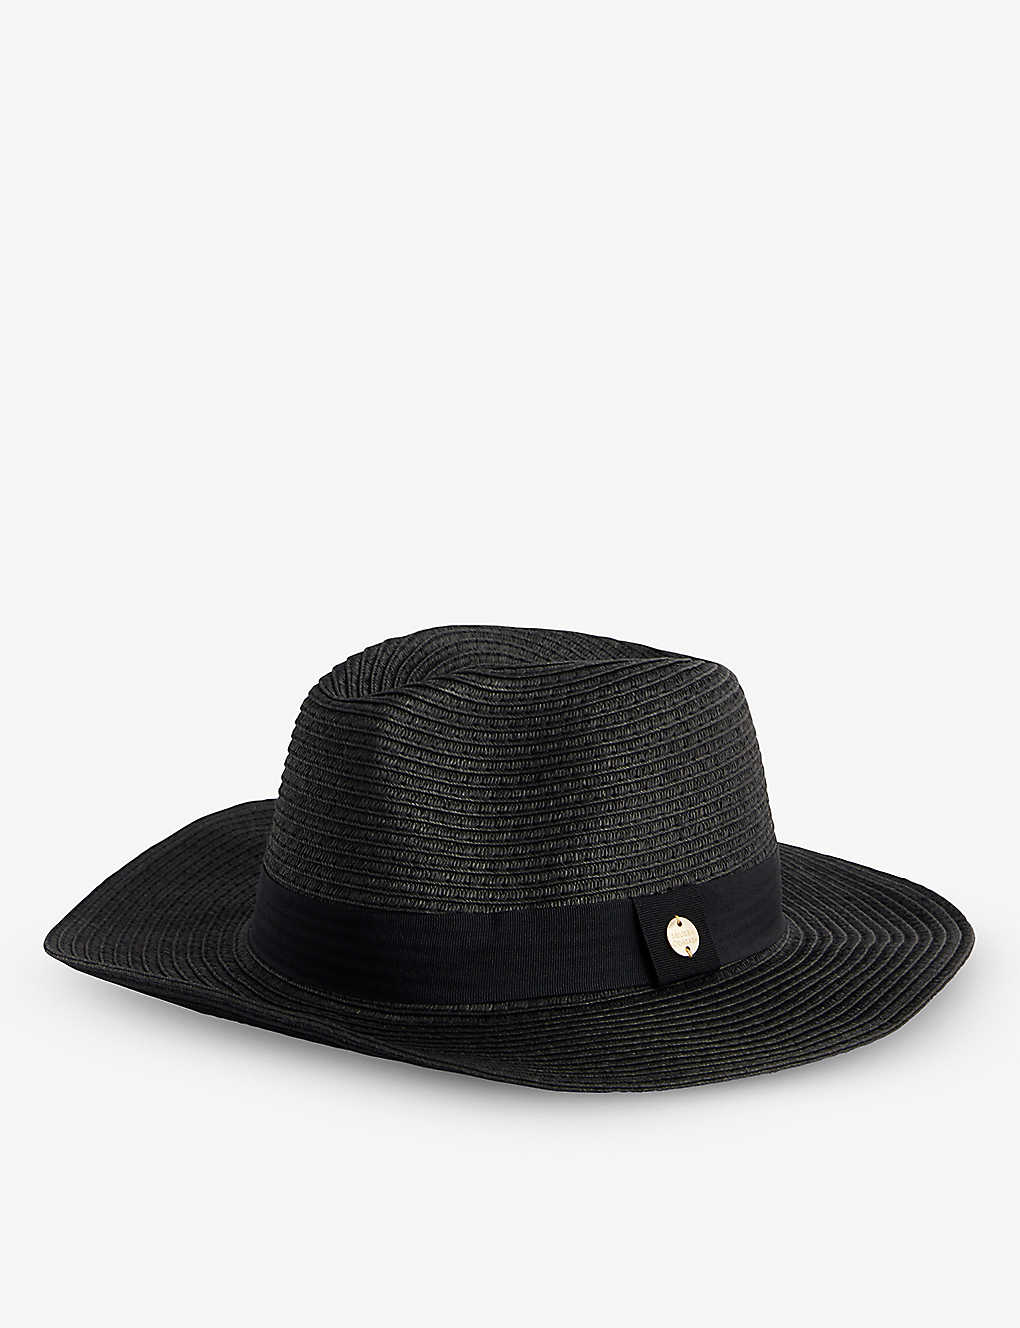 Melissa Odabash Engraved-buckle Paper Fedora Hat In Black/black